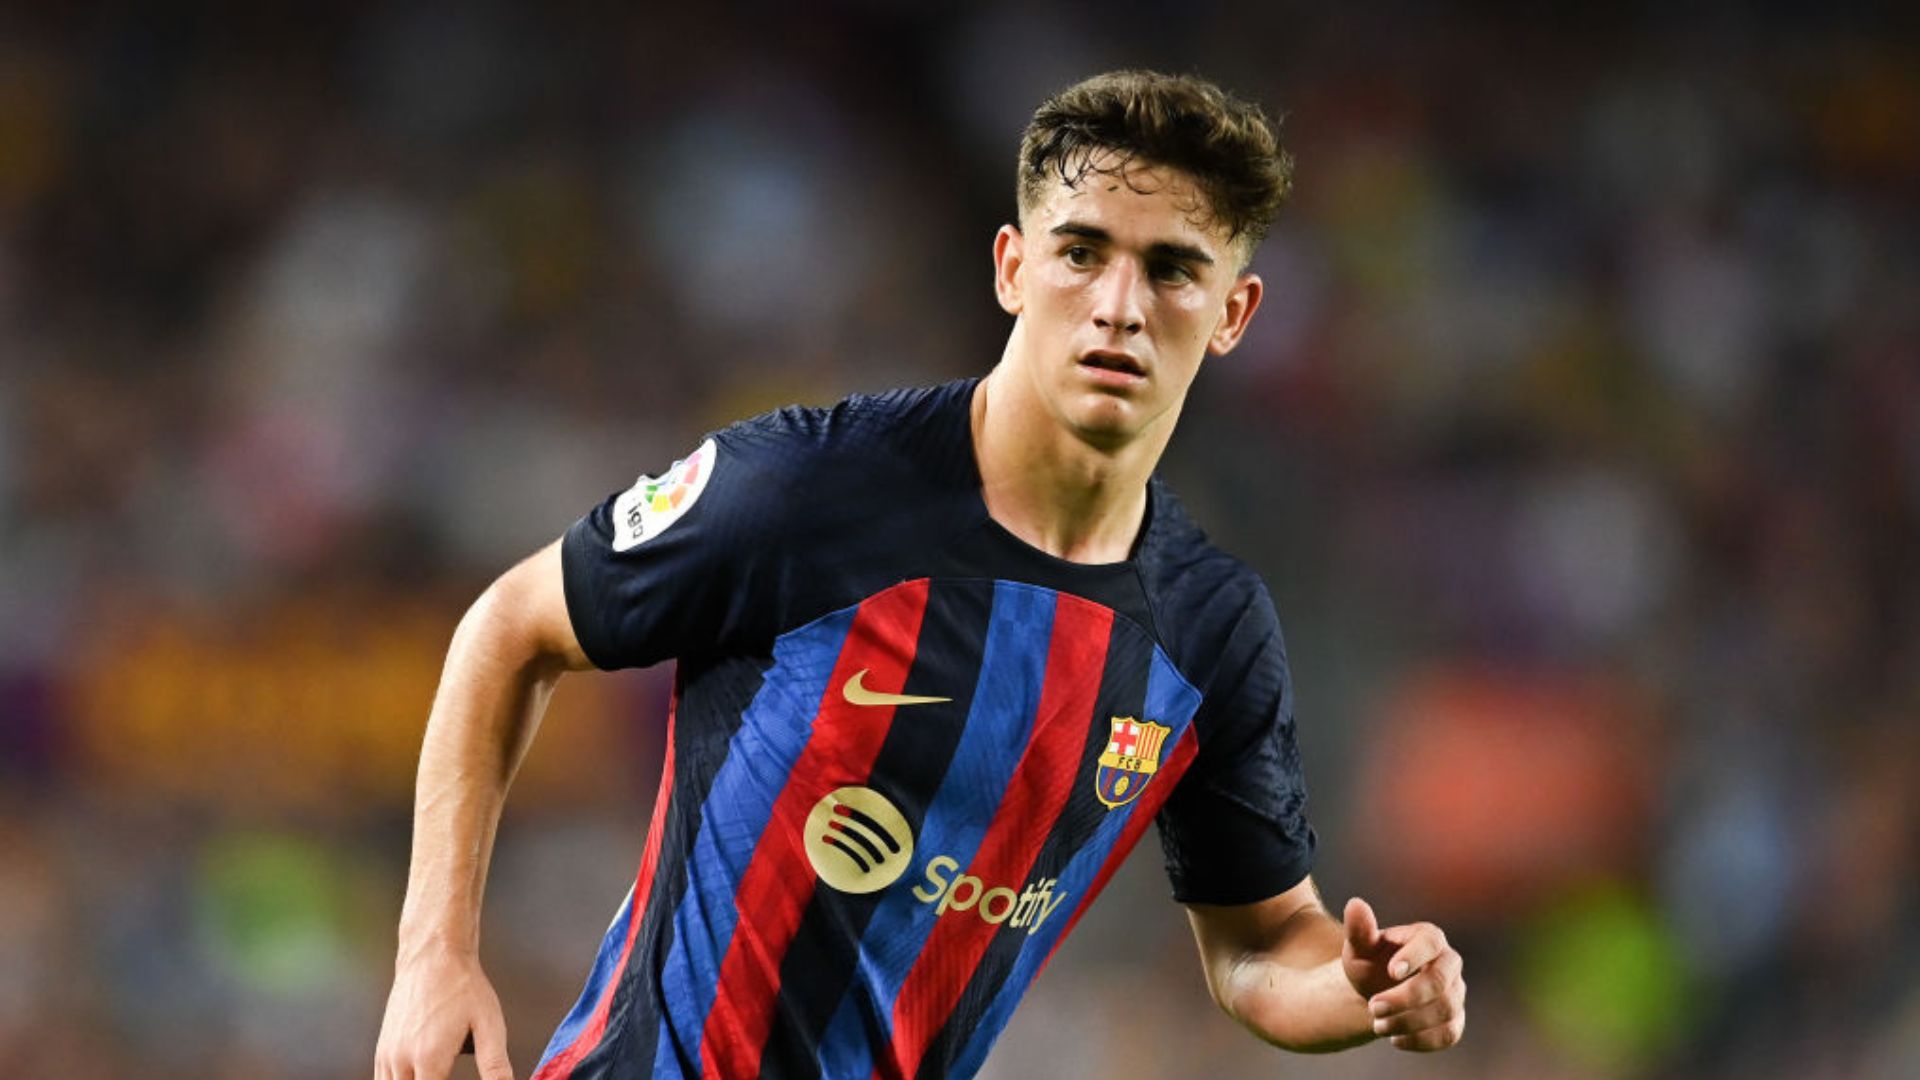 Revelação do Barcelona, Gavi é eleito Golden Boy de 2022 - Superesportes